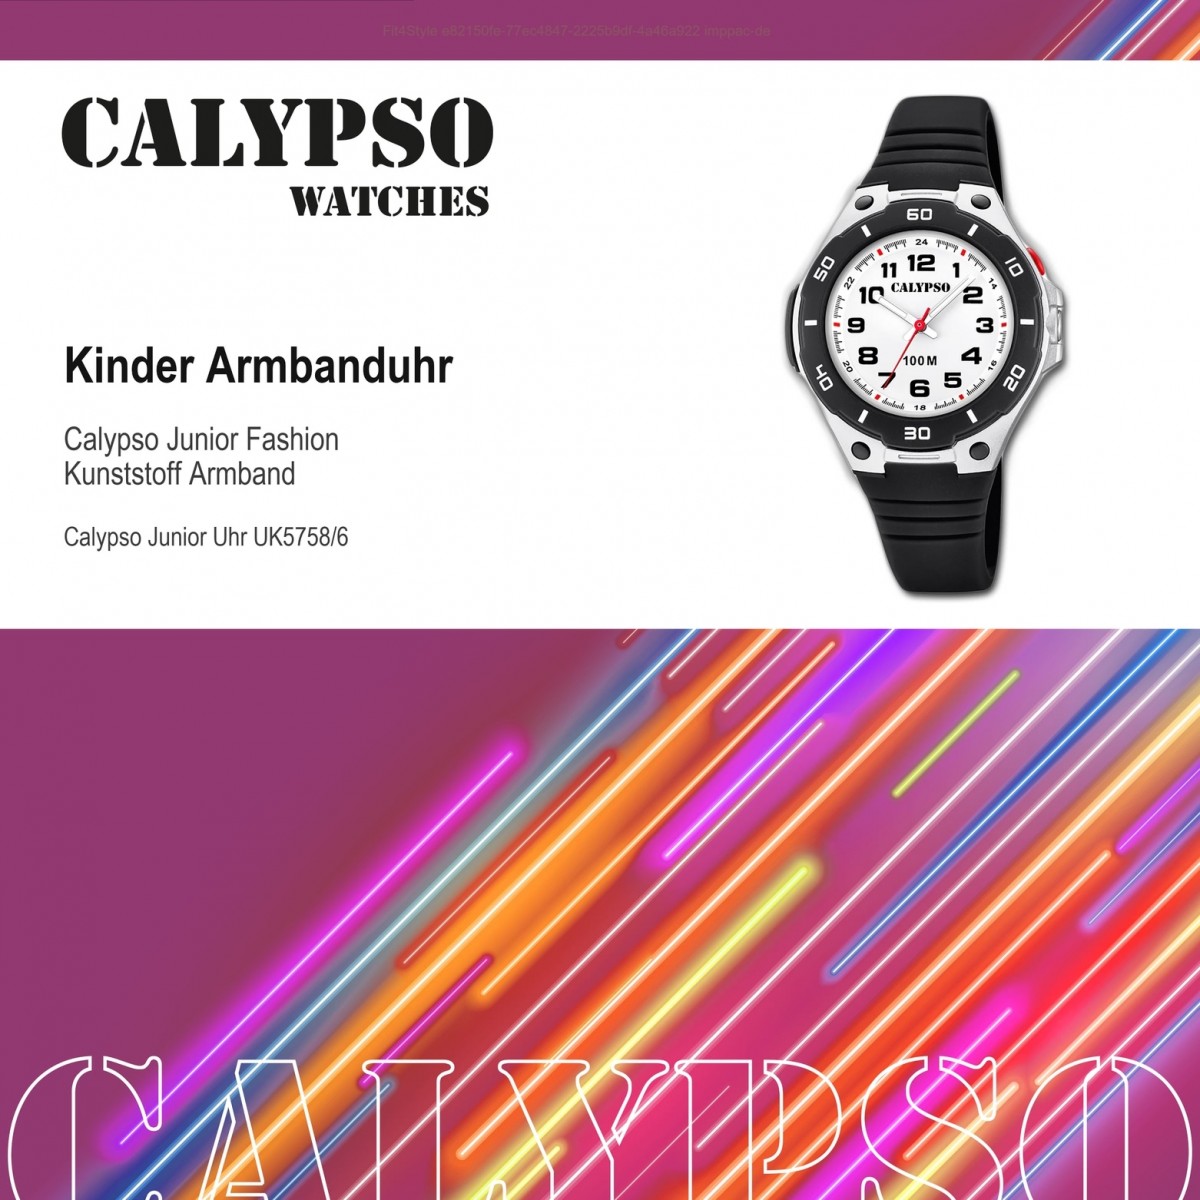 Calypso Kinder Armbanduhr Sweet Time K5758/6 Quarz-Uhr PU schwarz UK5758/6